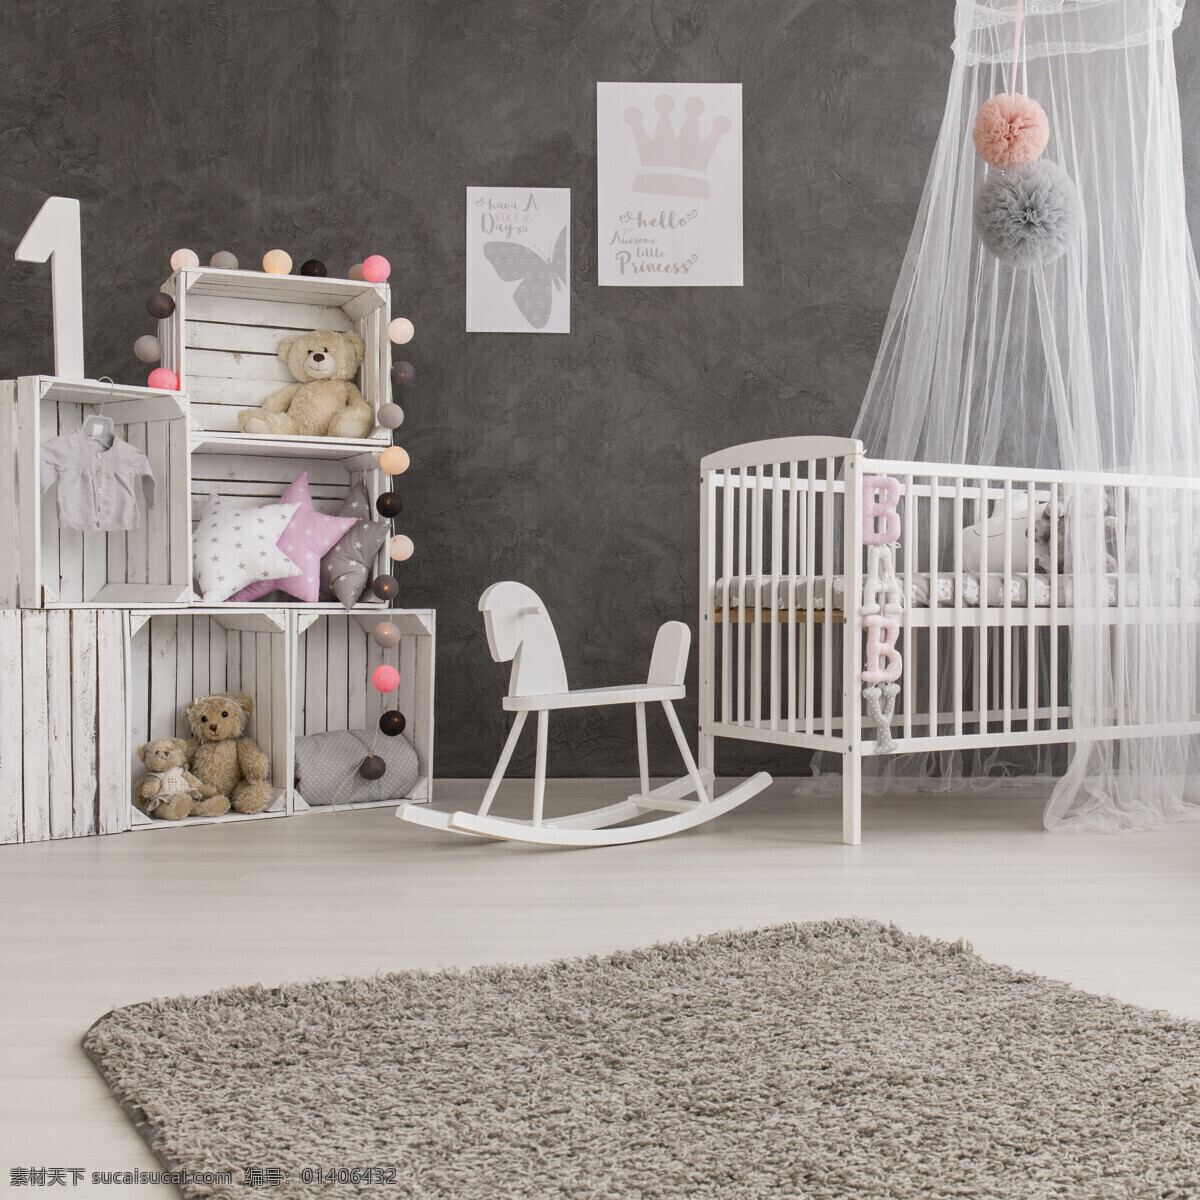 儿童 房 婴儿 效果图 室内设计 装饰 装修 家装 儿童房 婴儿房 婴儿室 女儿房 环境设计